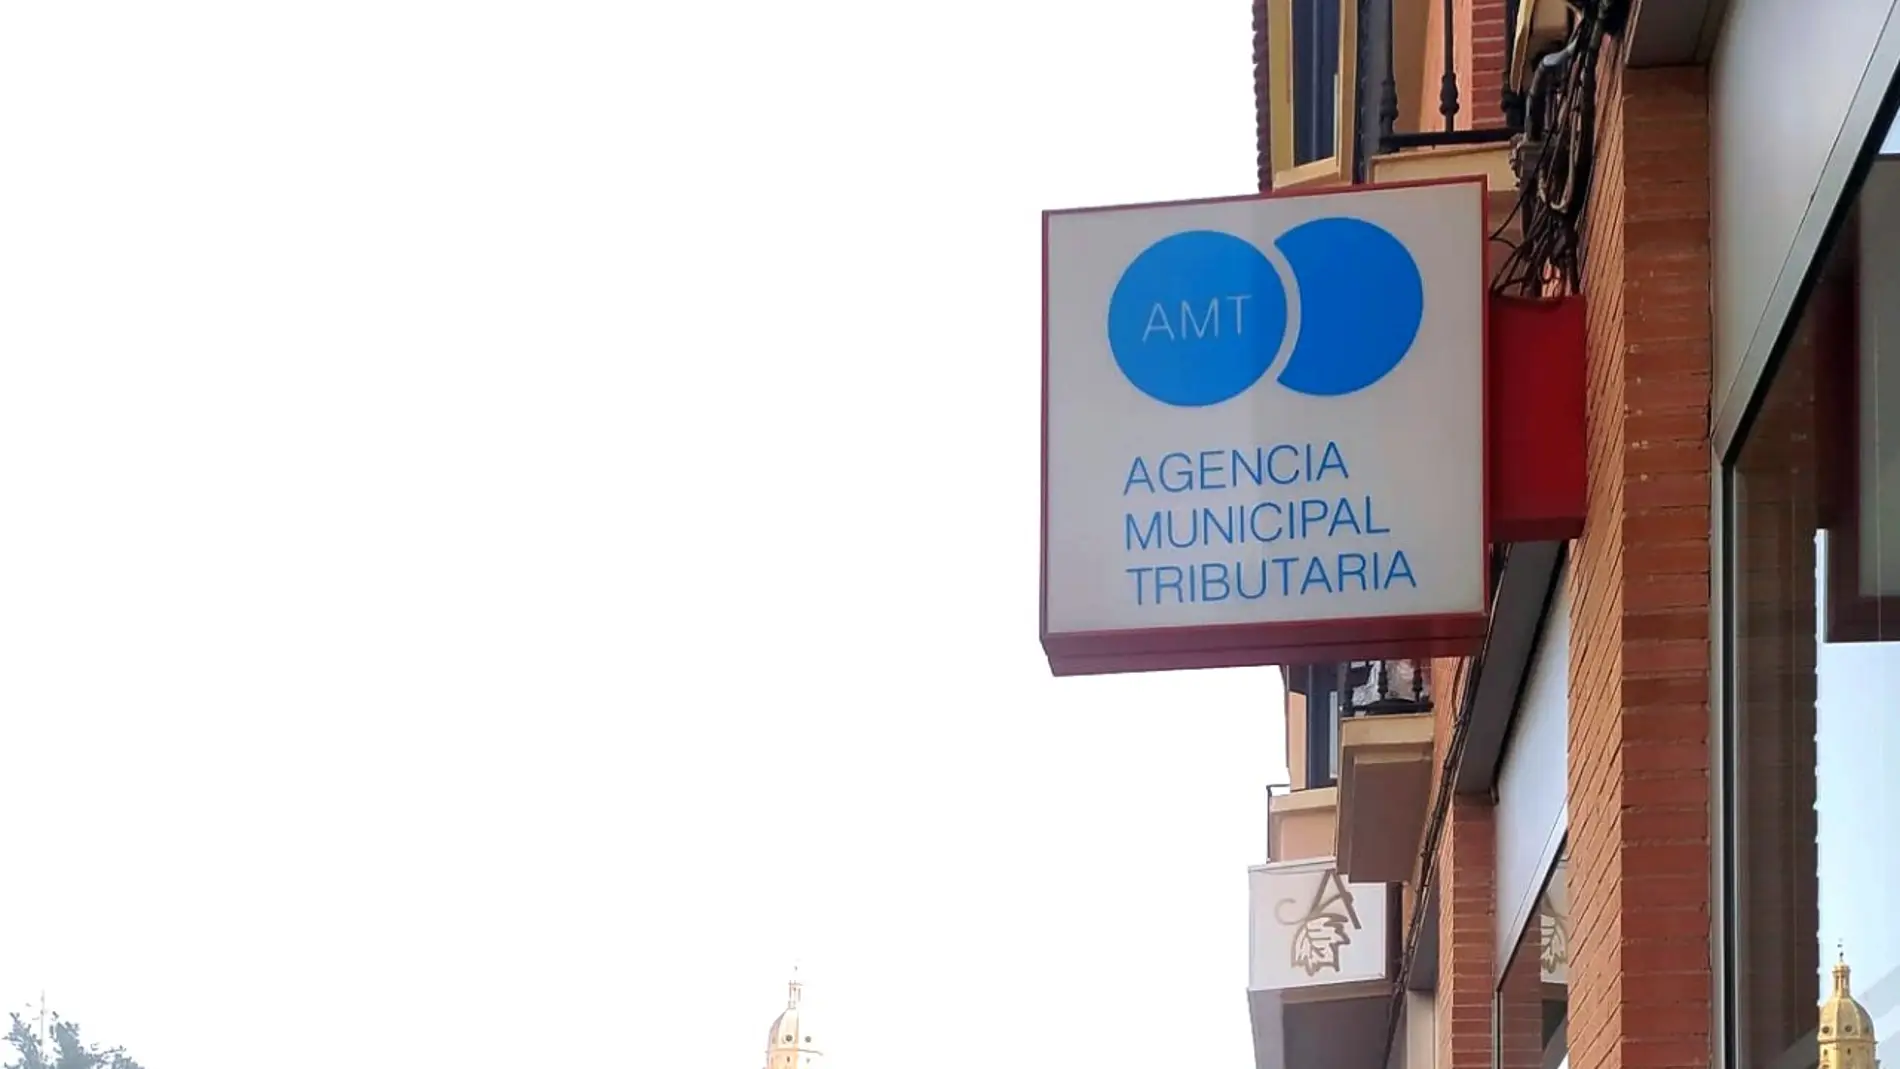 IBI Murcia